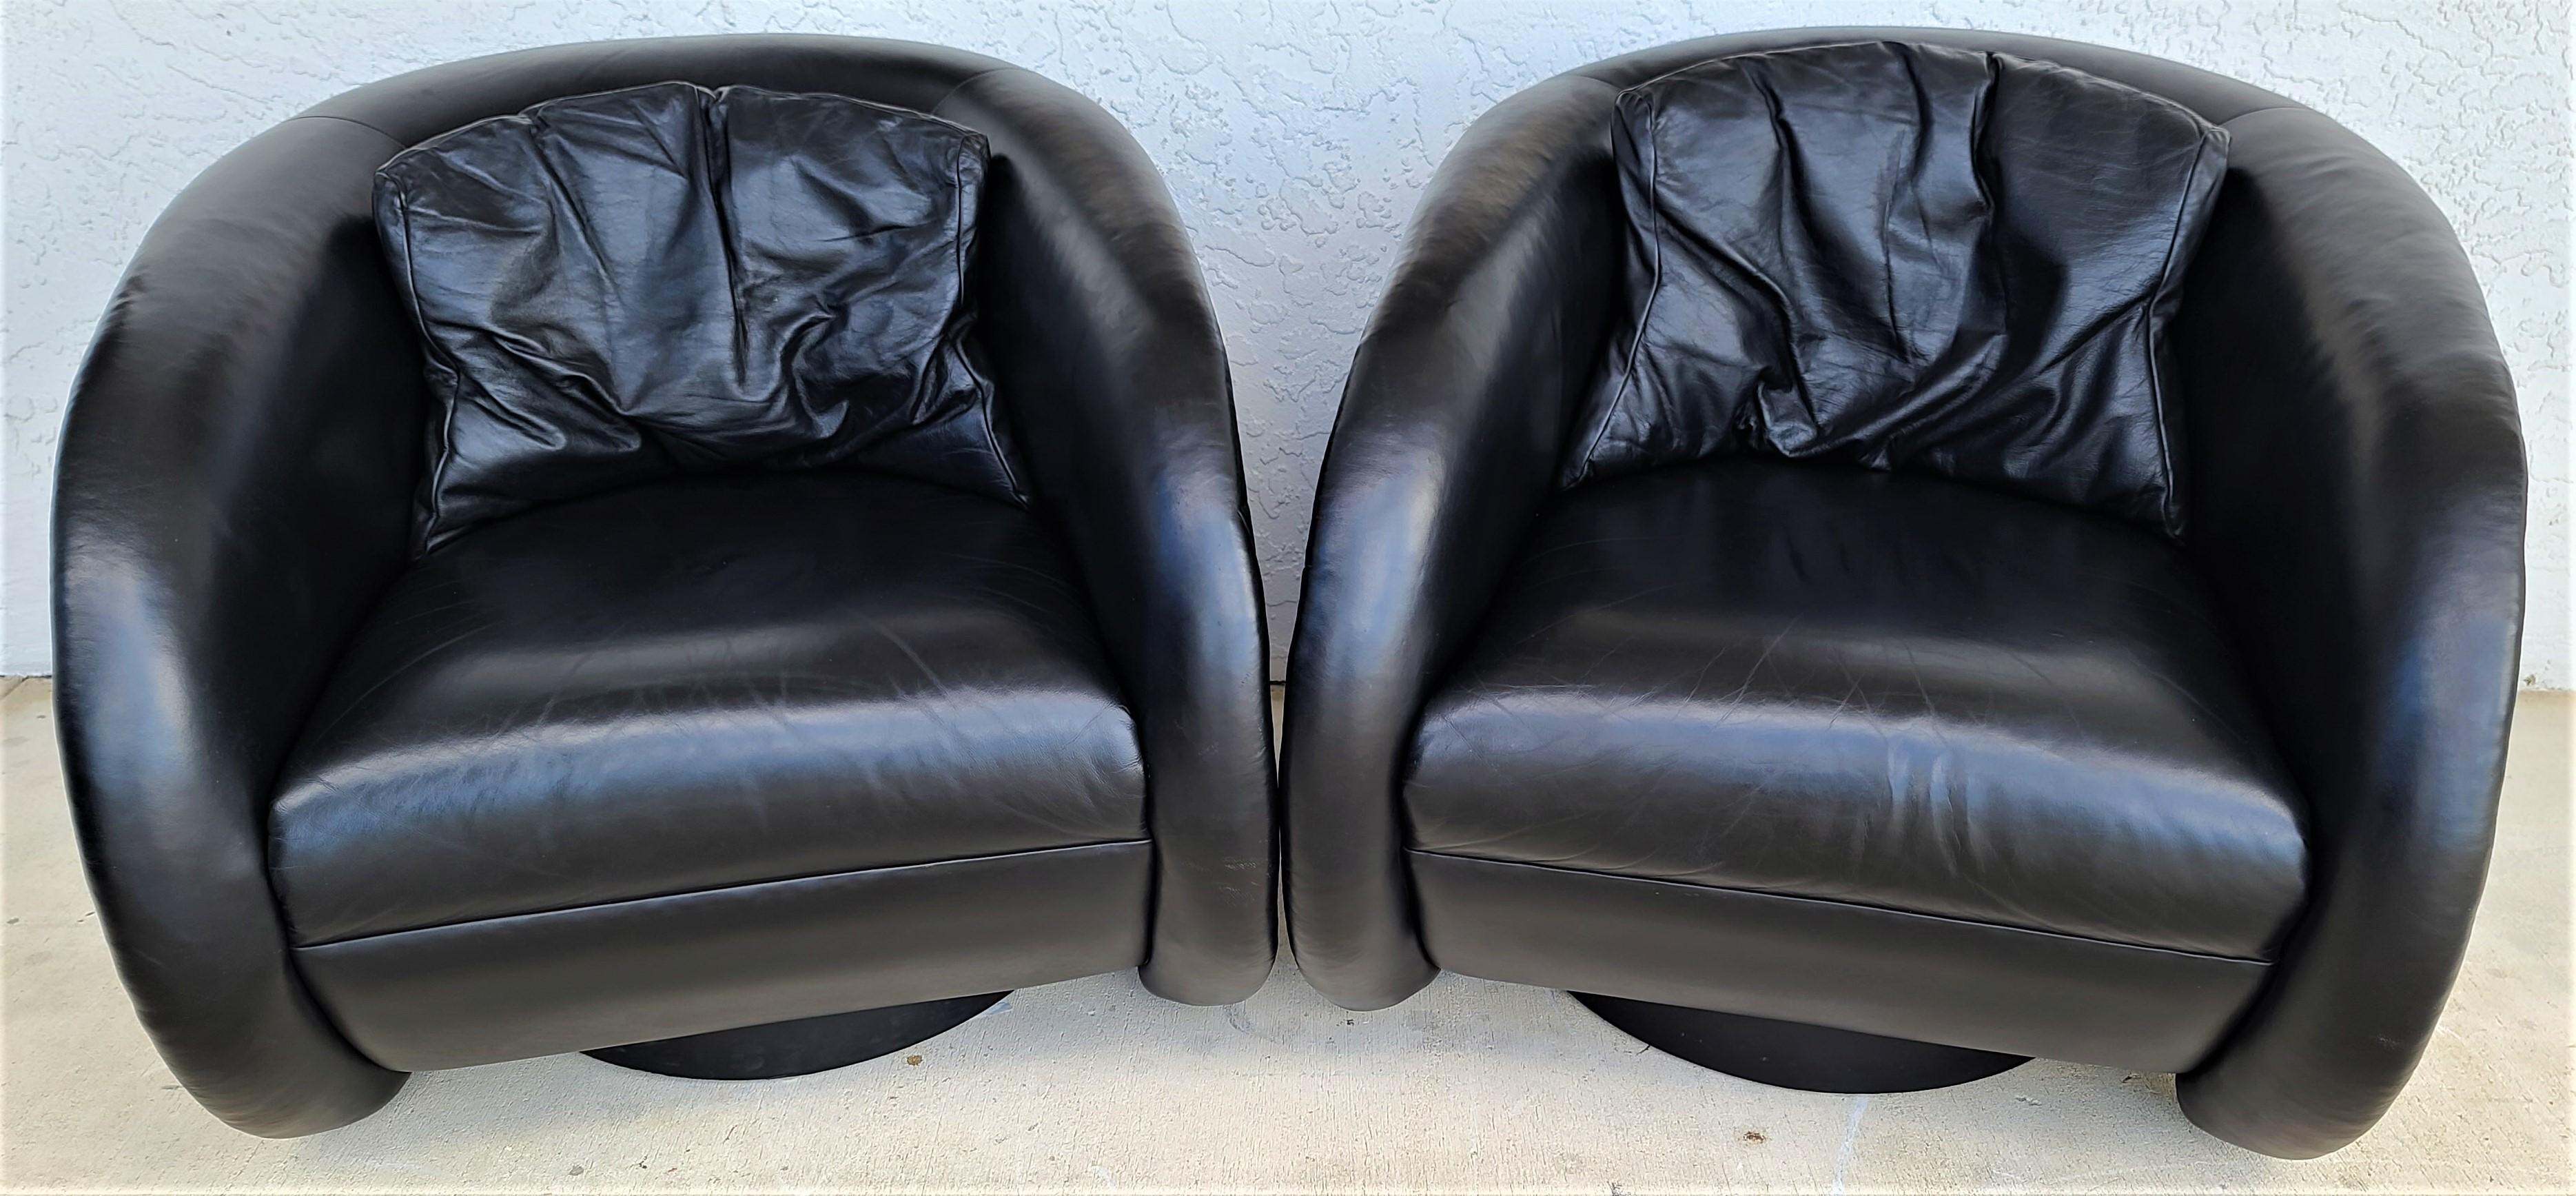 Wir bieten einen unserer jüngsten Palm Beach Estate-Ankäufe feiner Möbel an, ein
4er-Set Mid-Century Modern schwarzer Leder-Drehstühle von Preview
Spektakulär gestaltete Stühle mit einem Stil, der nie aus der Mode kommt, und aus sehr hochwertigem